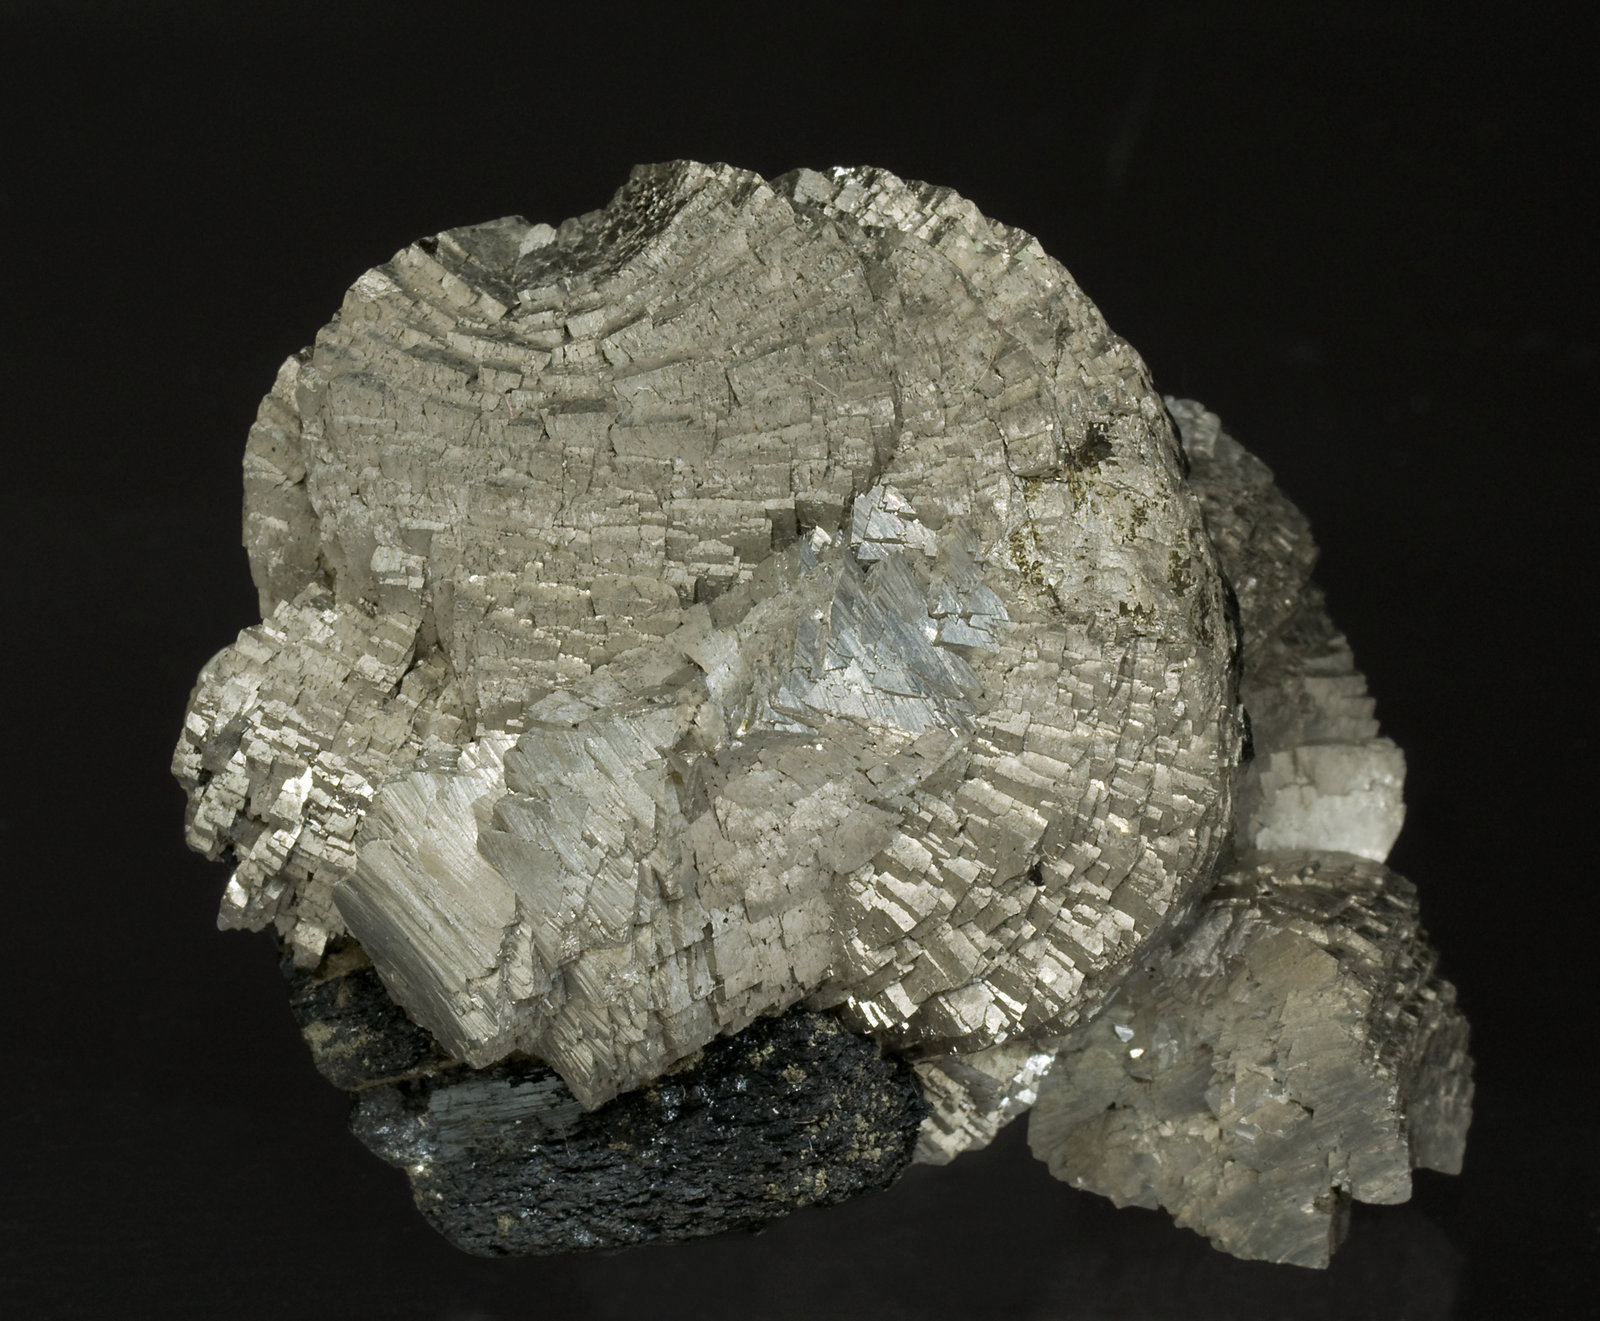 specimens/s_imagesV7/Arsenopyrite-TX26V7f.jpg